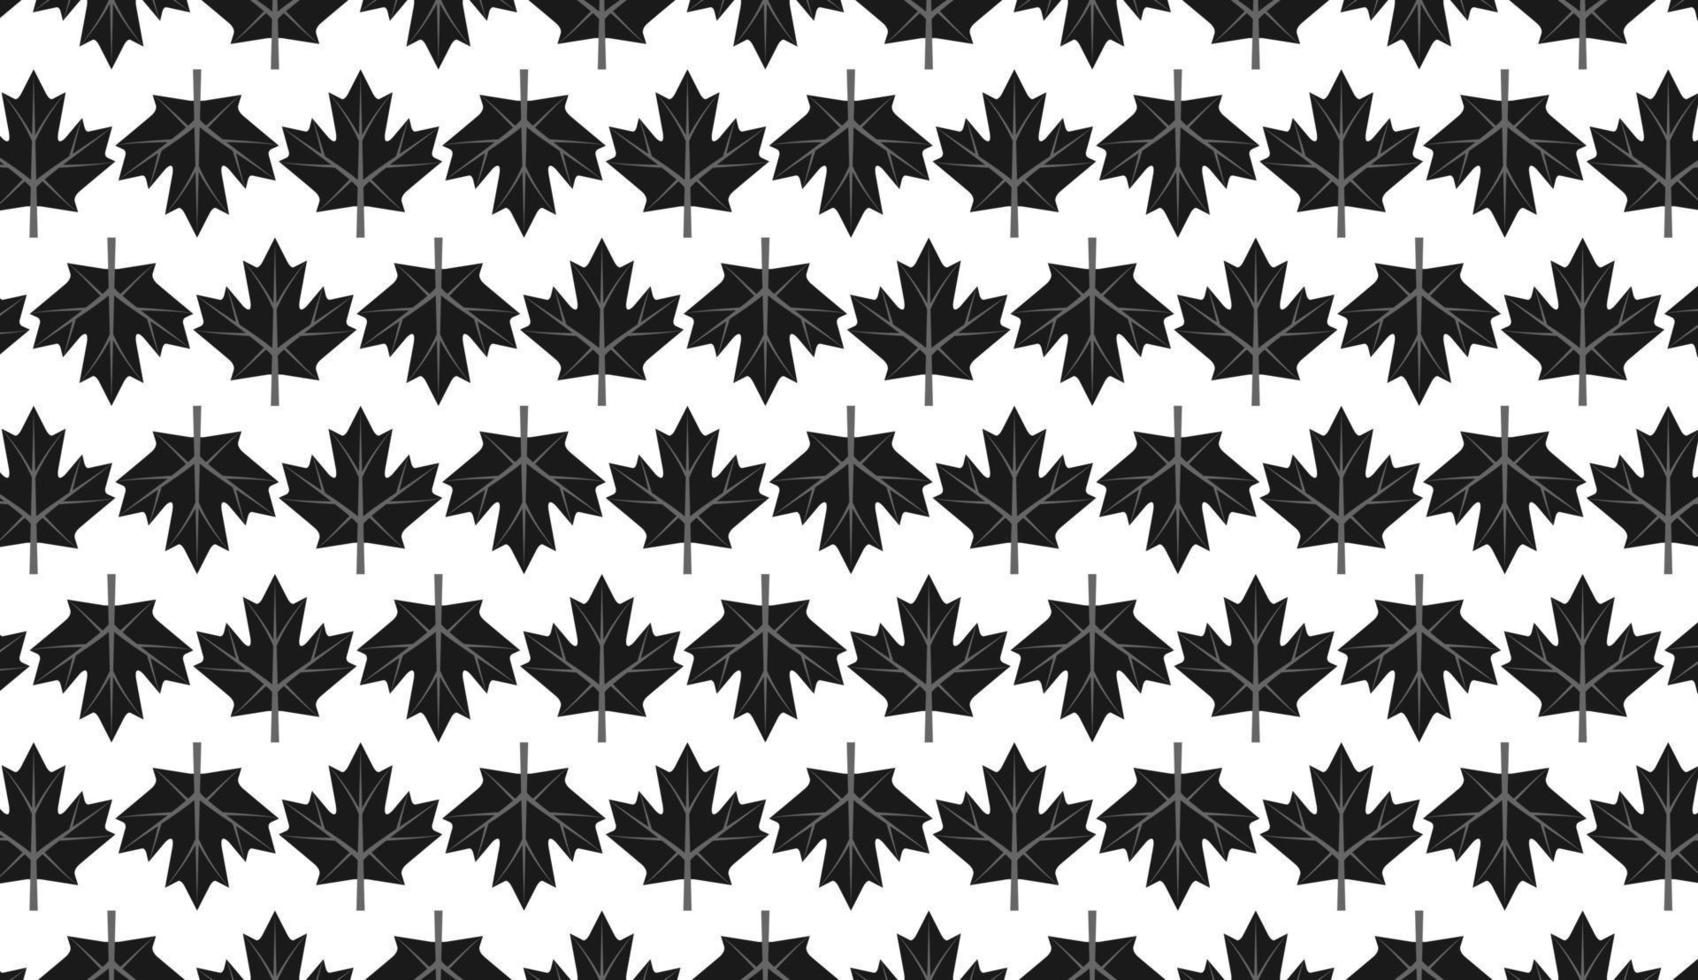 naadloos patroon. grijs zwart esdoornbladpatroon. eenvoudig patroonontwerp. kan worden gebruikt voor posters, brochures, ansichtkaarten en andere afdrukbehoeften. vector illustratie